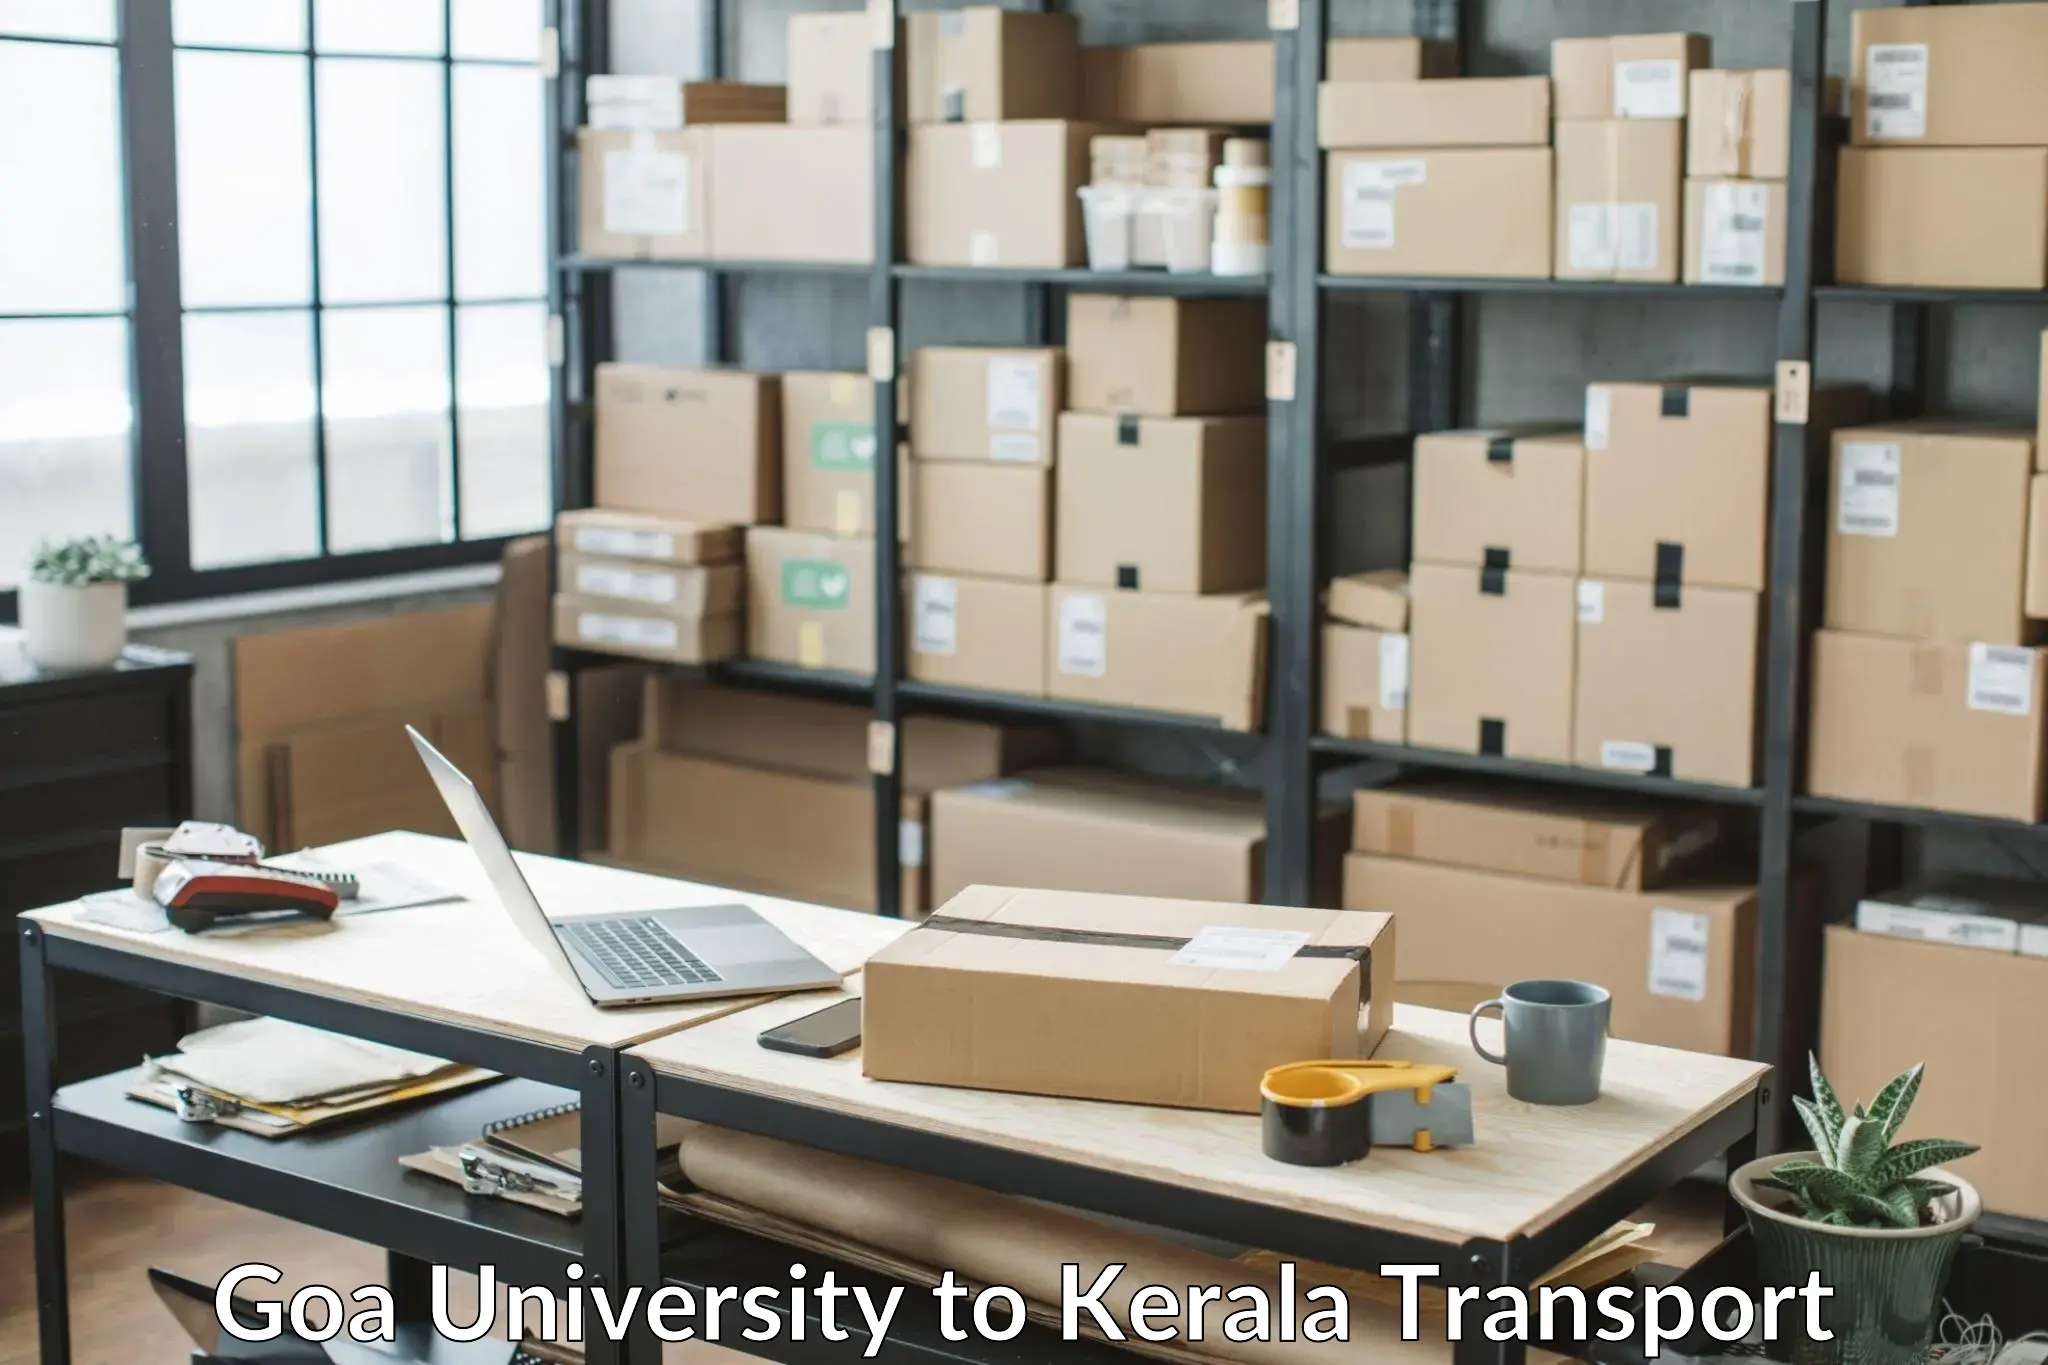 Furniture transport service Goa University to IIT Palakkad